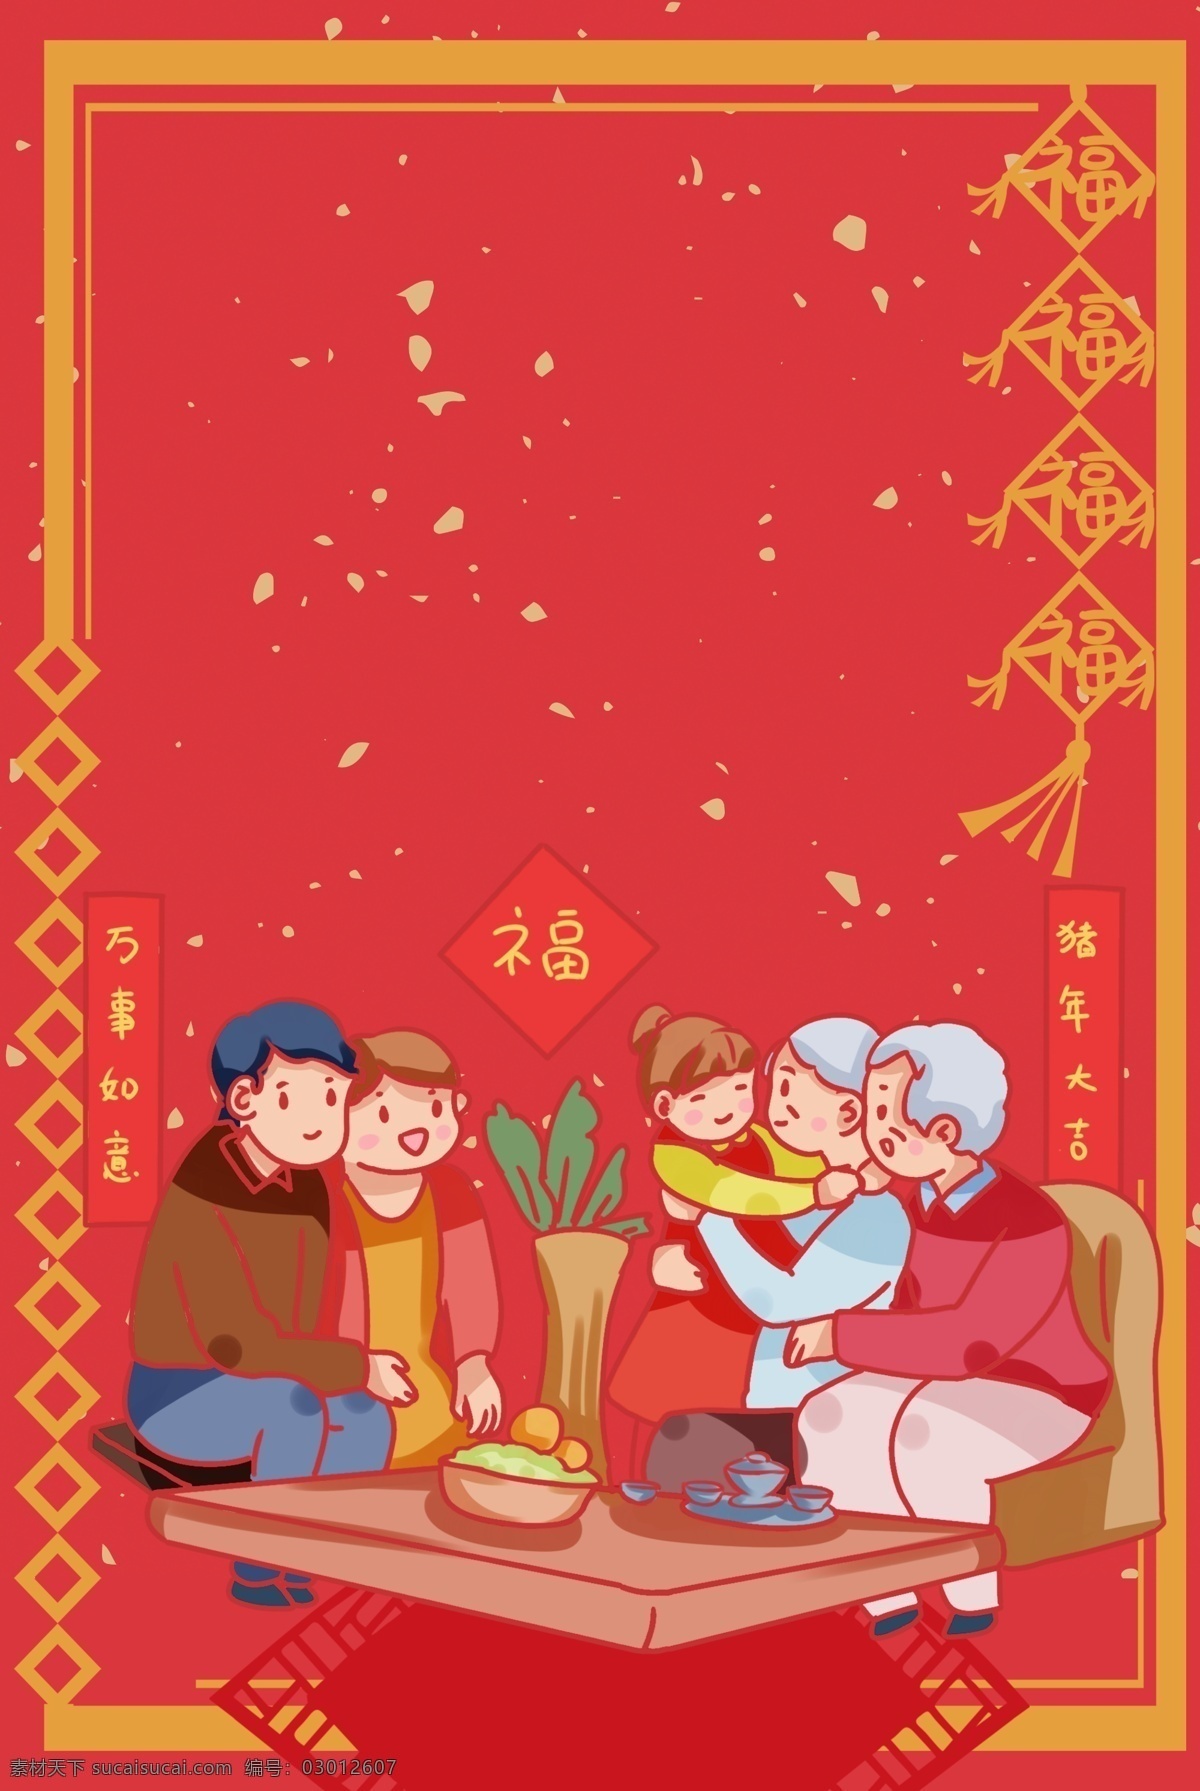 新年 签 中国 风 卡通 红色 海报 背景 新年签 过年 跨年 求签 中国风 卡通人物 团圆 春节